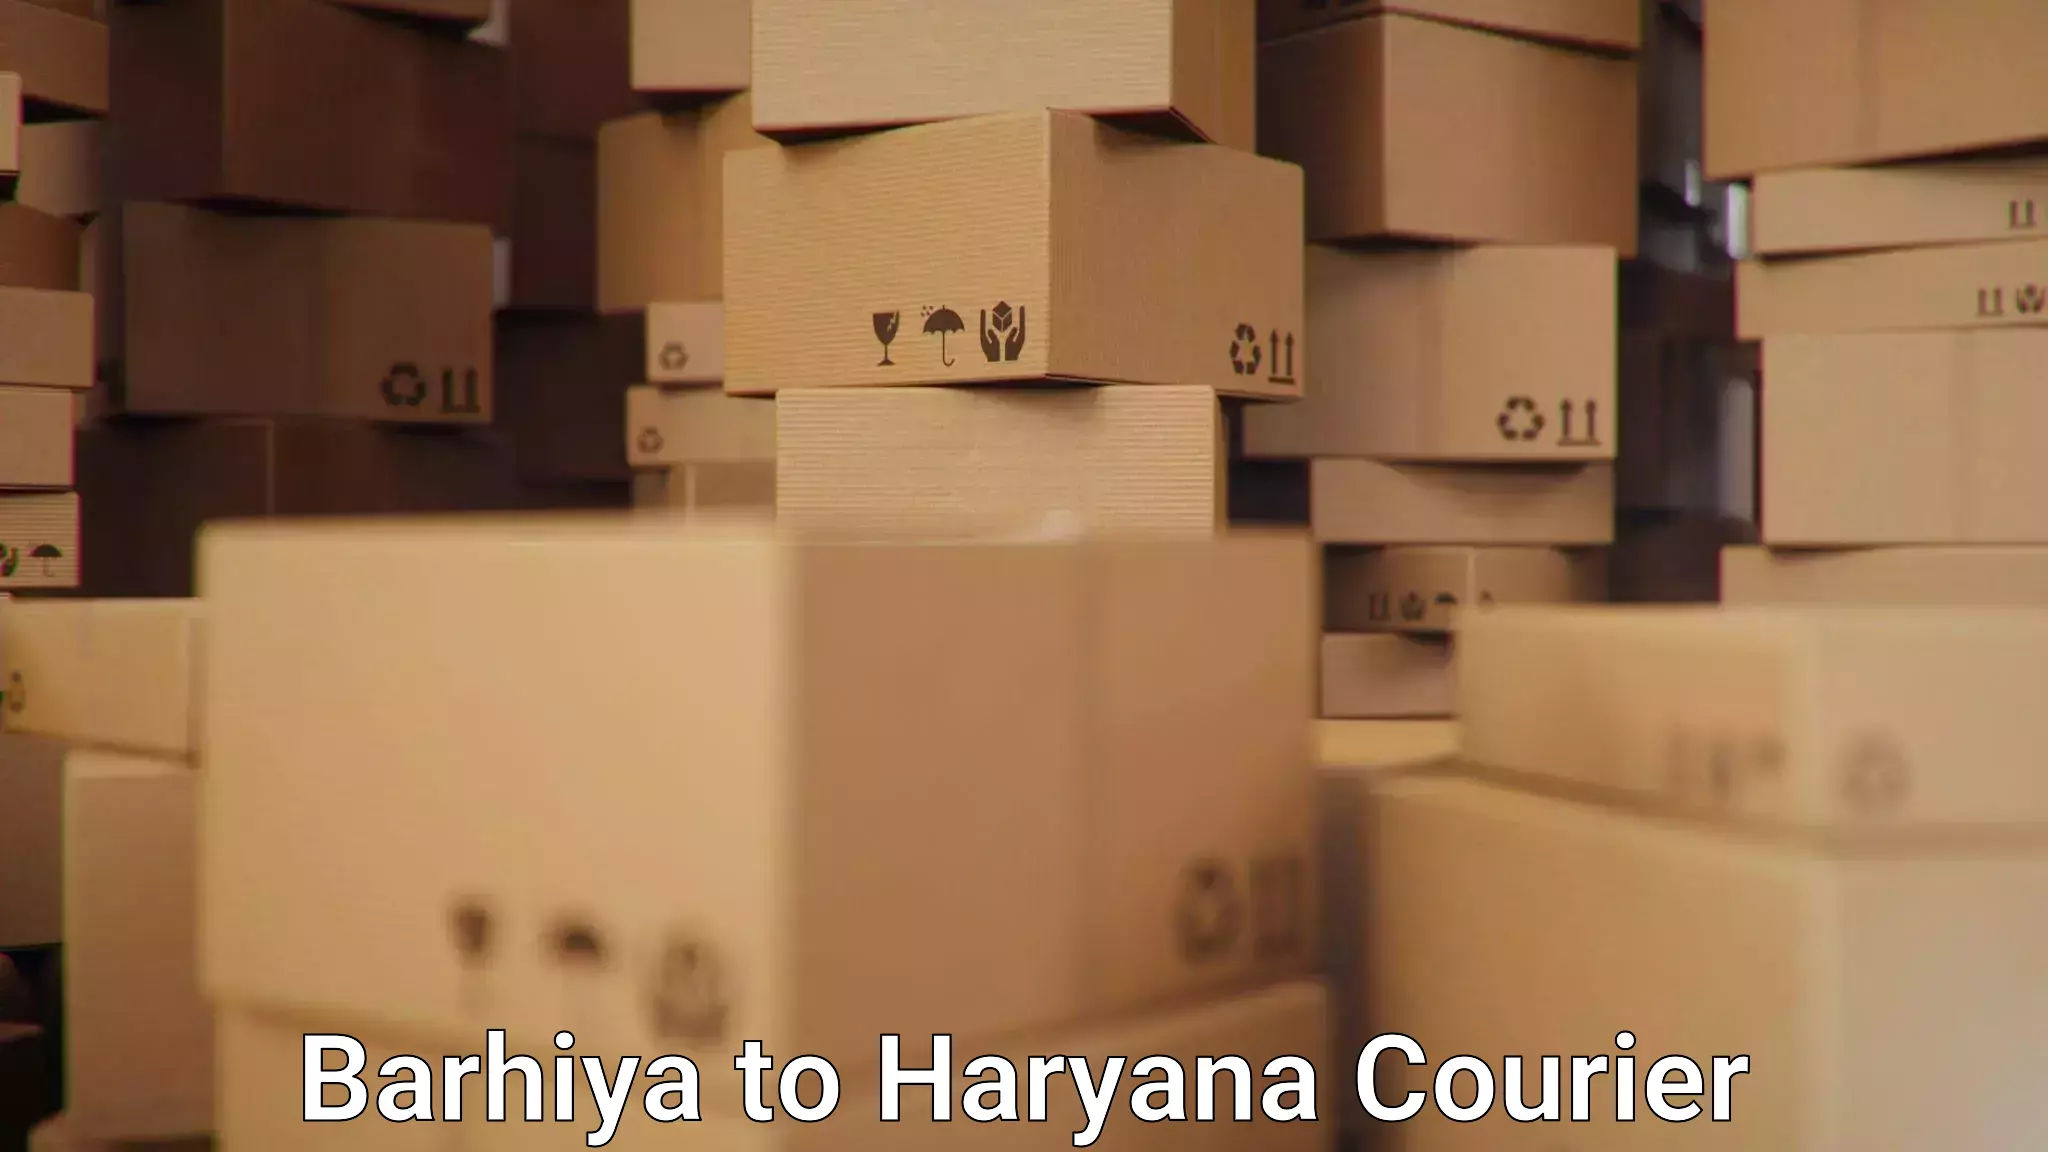 Small parcel delivery Barhiya to Chaudhary Charan Singh Haryana Agricultural University Hisar